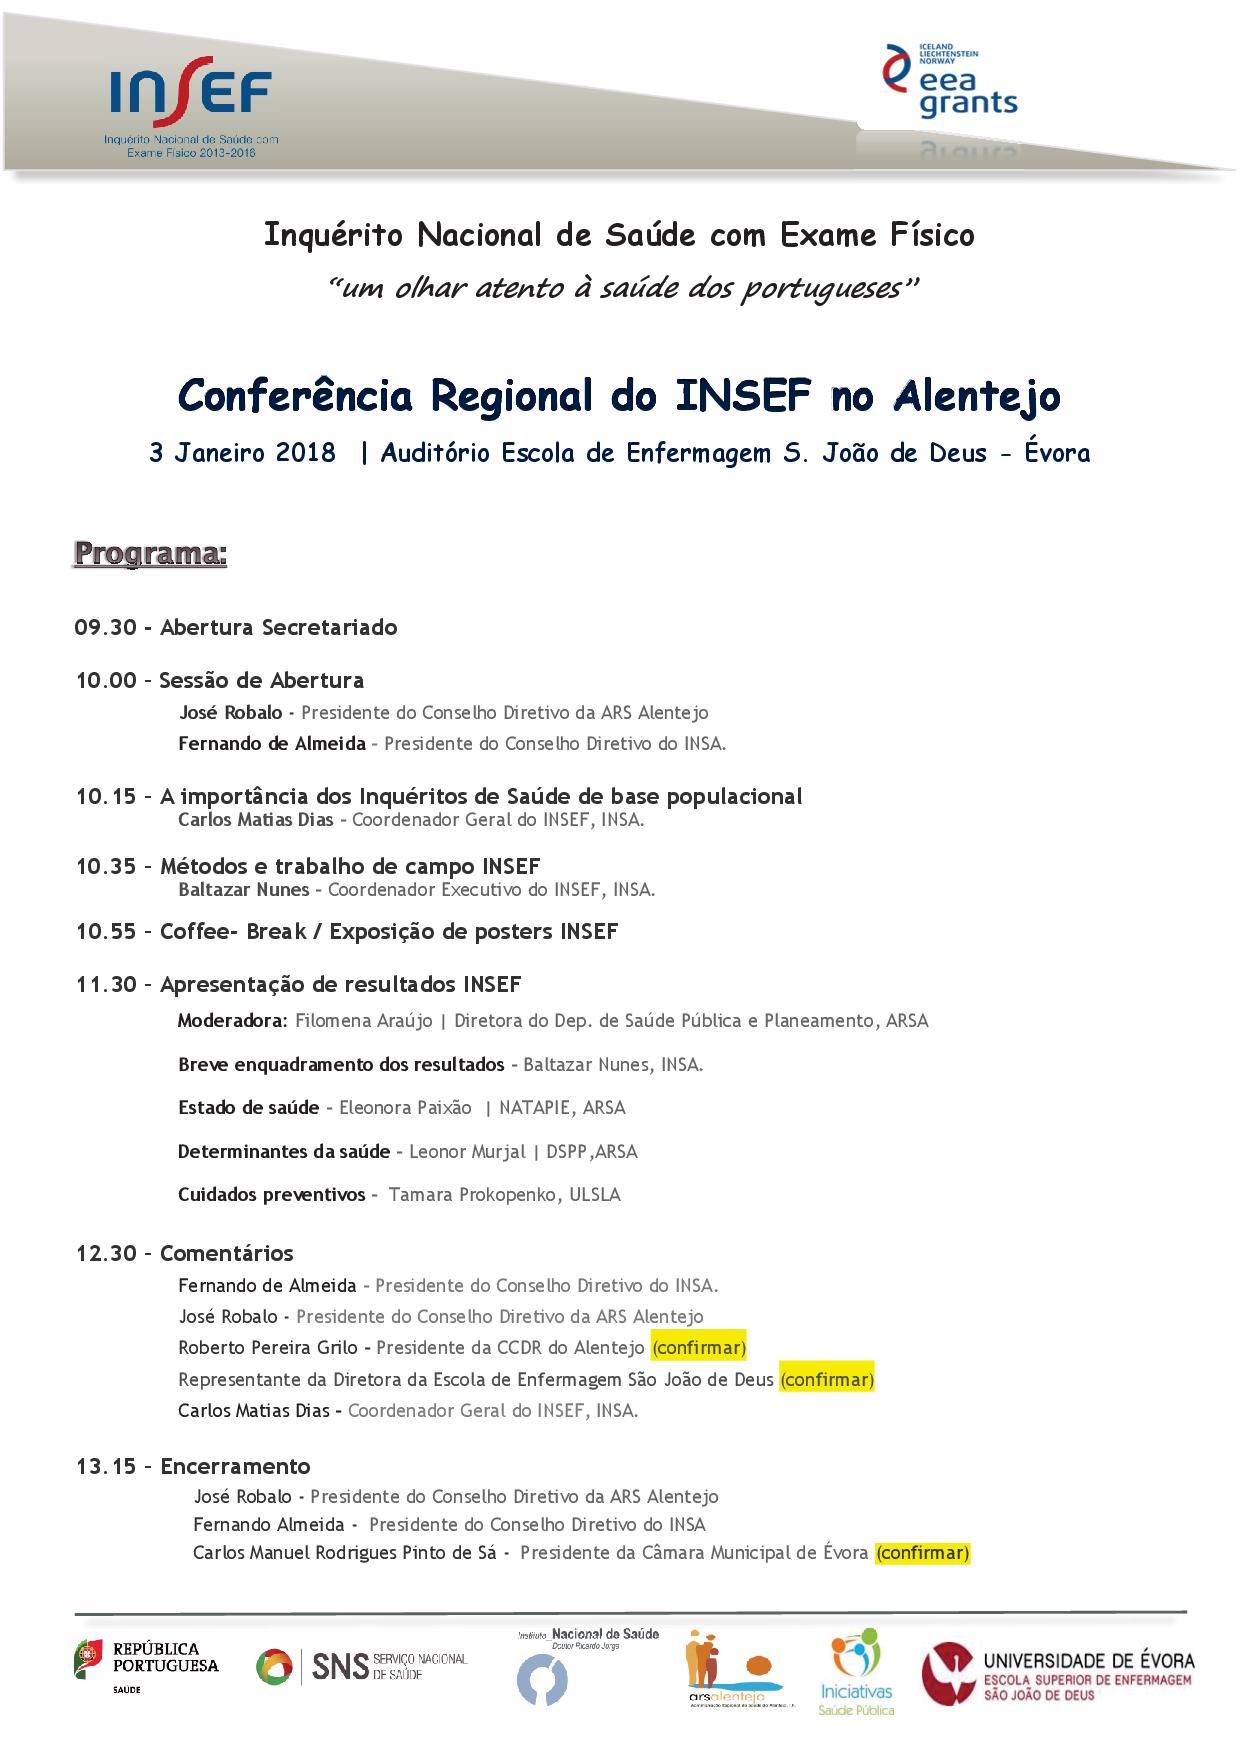 Conferência do INSEF no Alentejo - Programa preliminar  2017.jpg